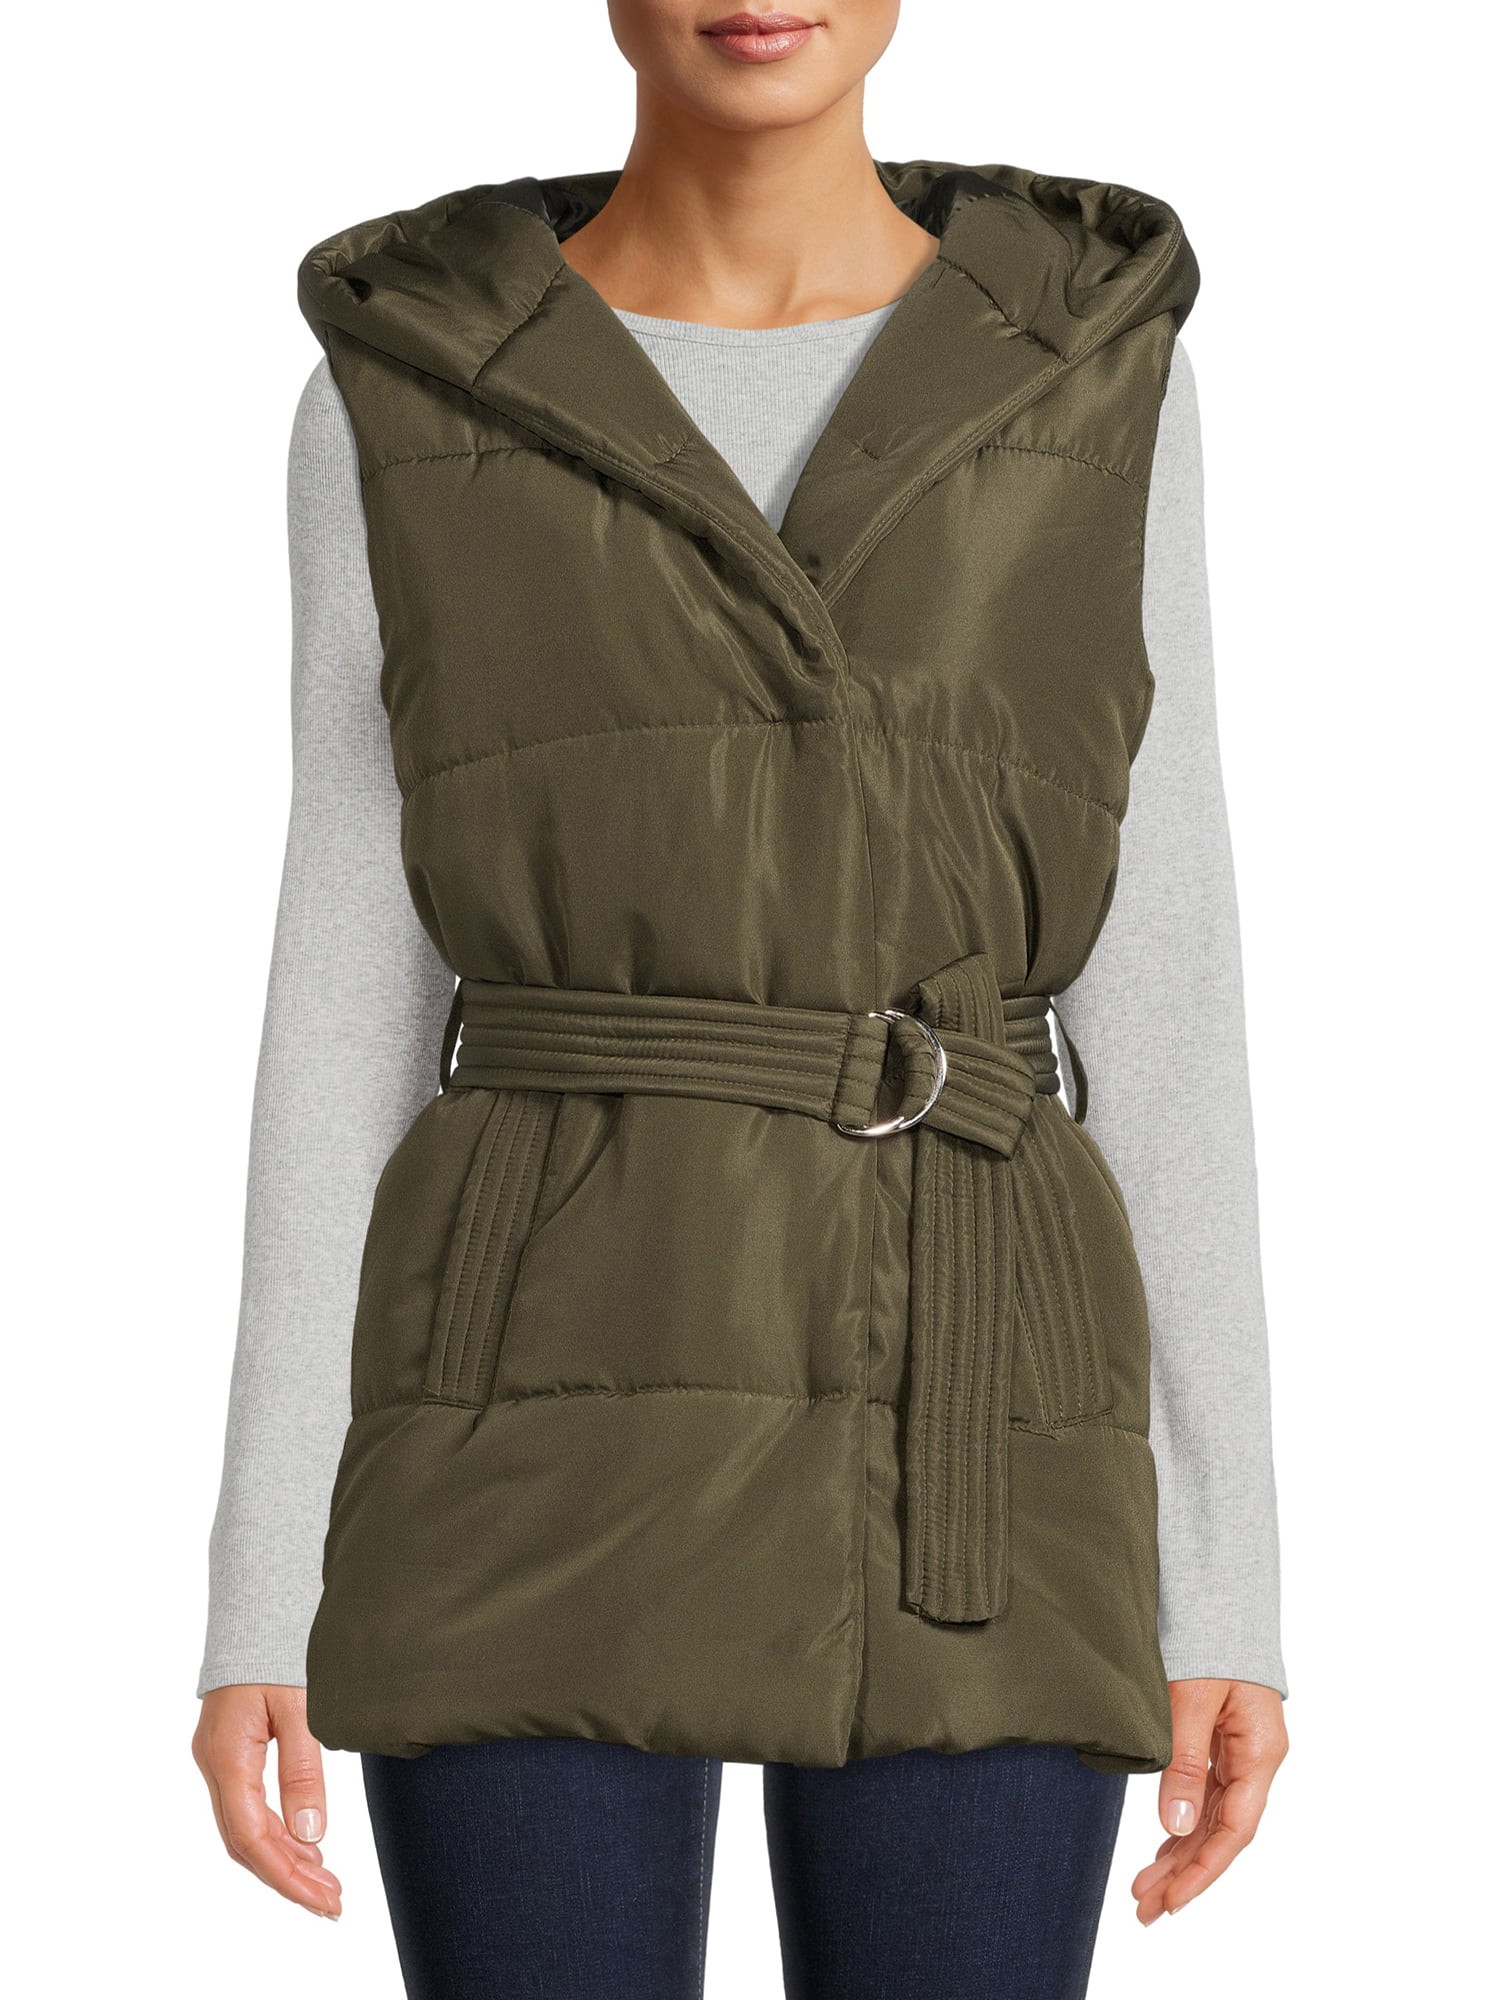 Jason Maxwell Women's Belted Puffer Vest with Hood - Walmart.com